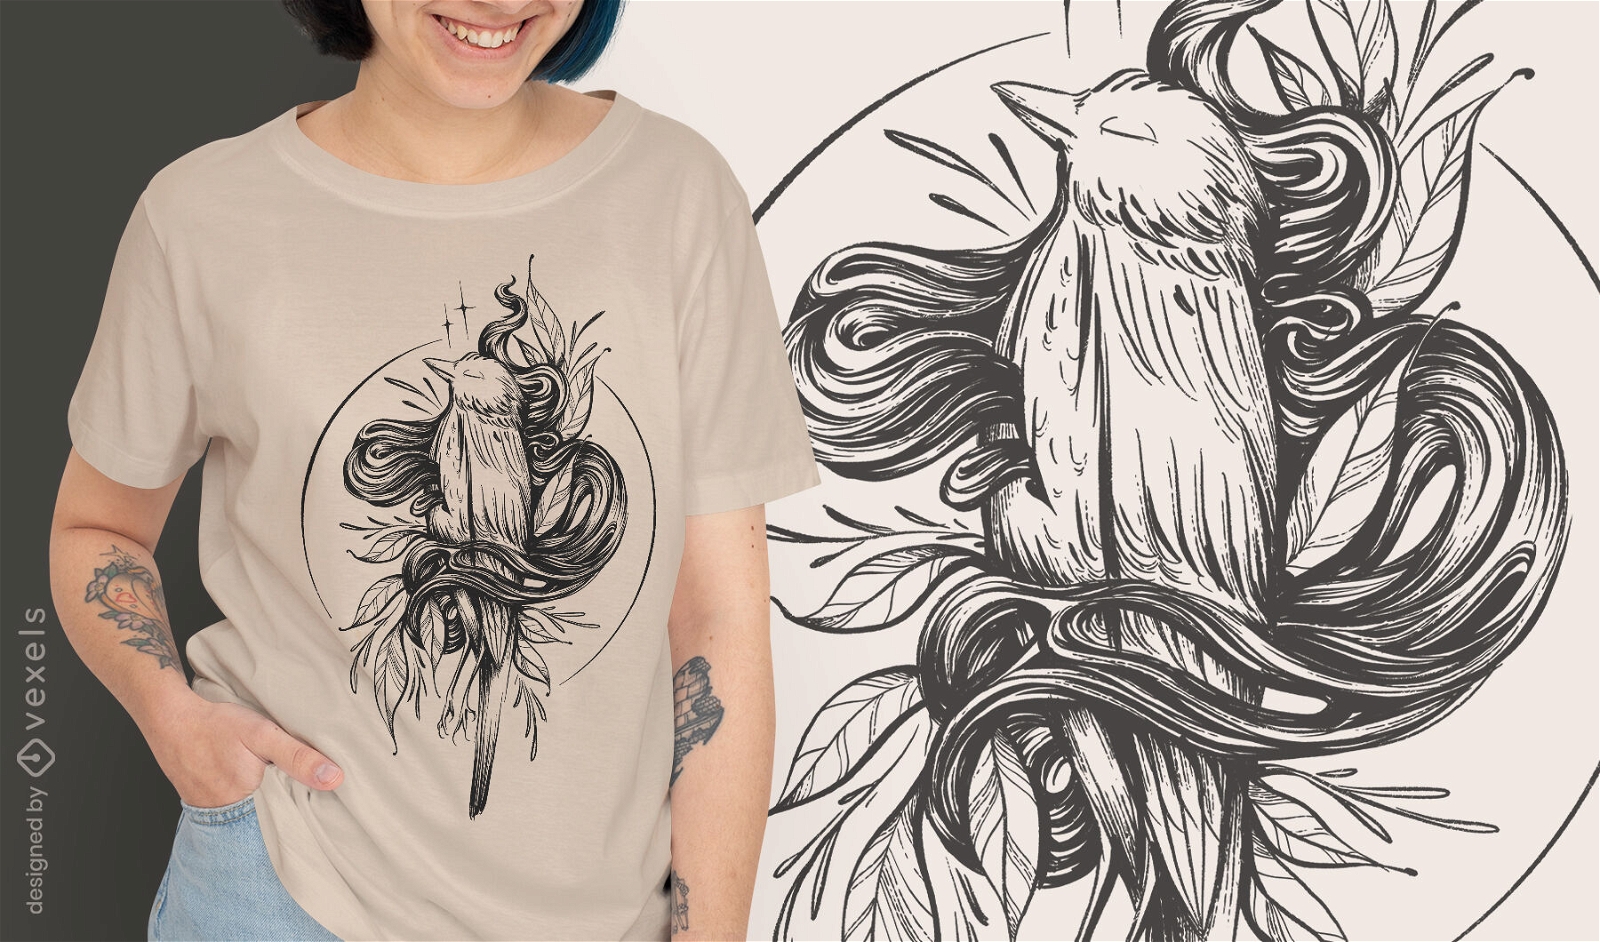 Hand drawn dead bird t-shirt design